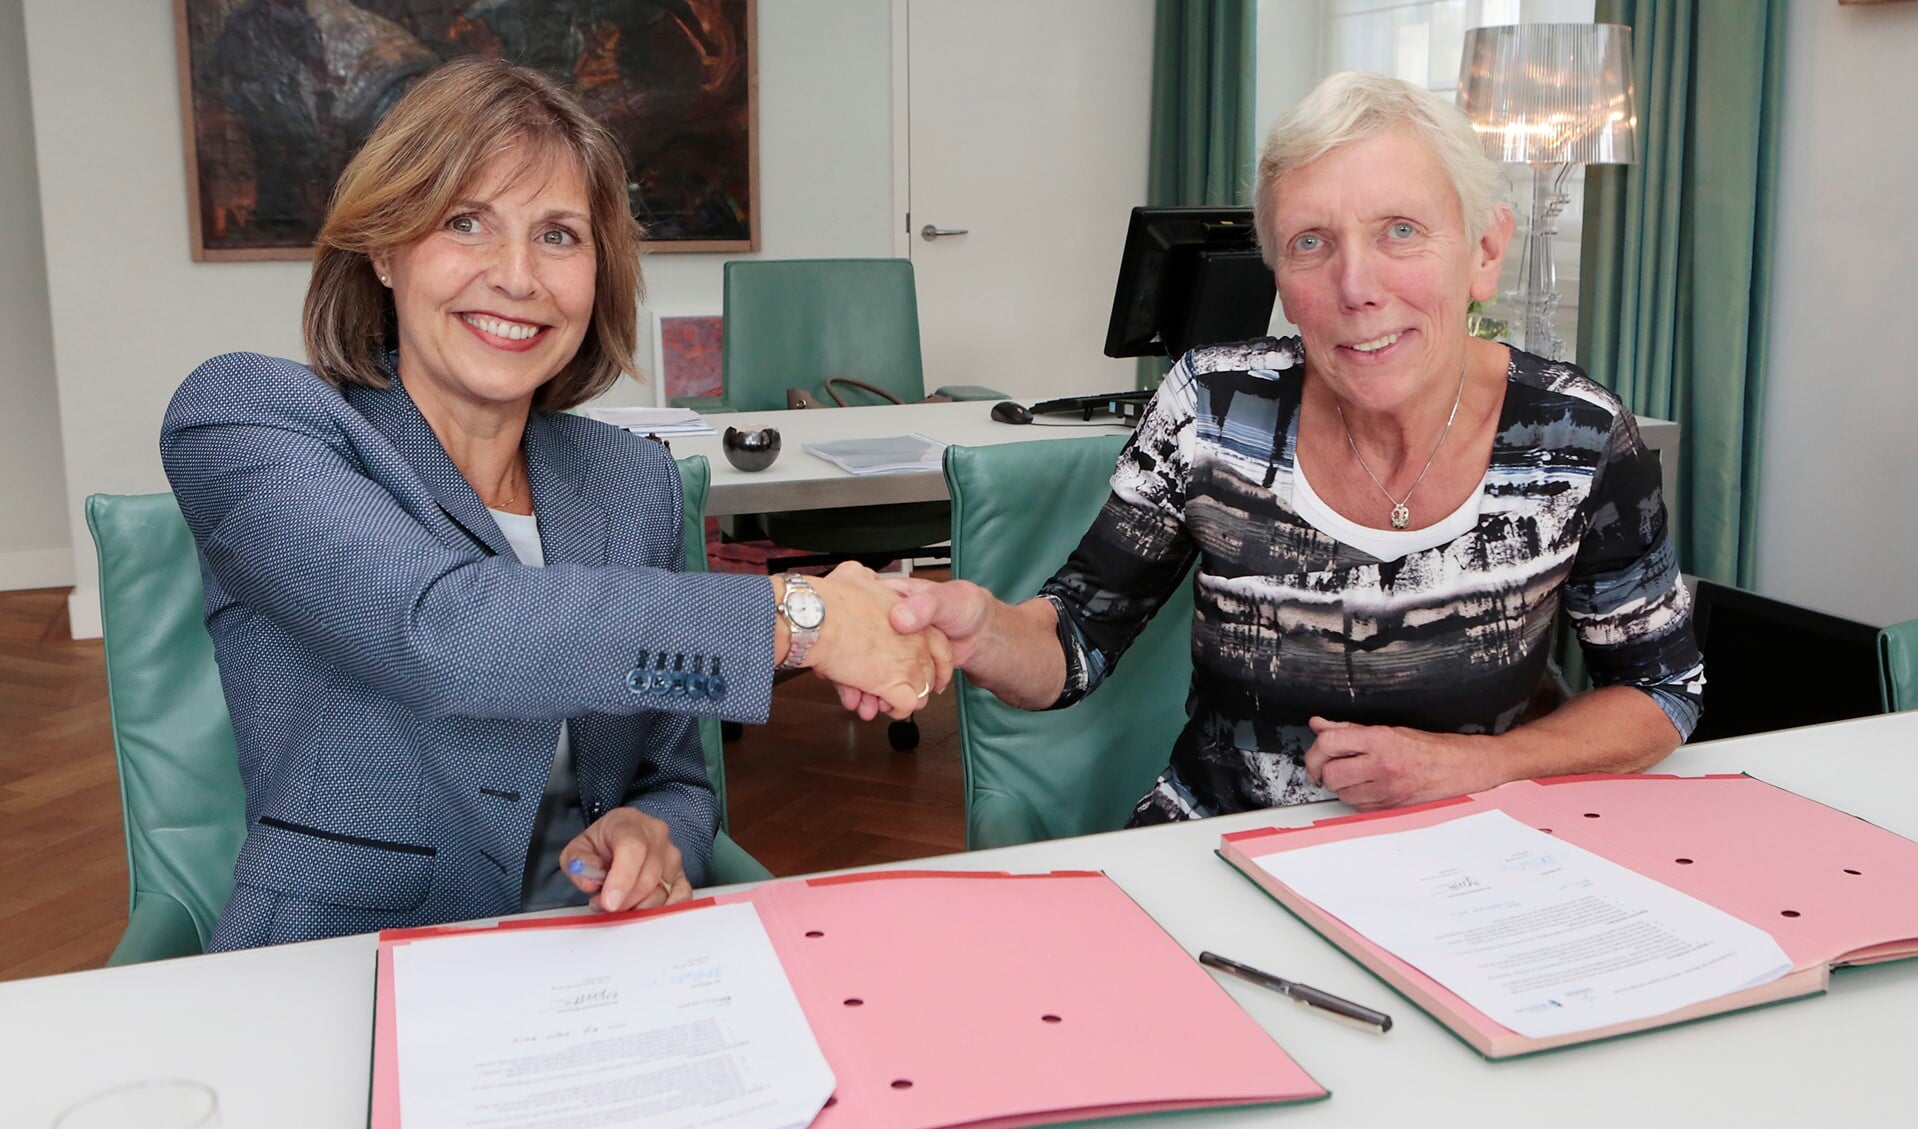 Joan van der Burgt (directeur van de Alliantie) en wethouder Liesbeth Boersen (r) schudden elkaar de hand na het ondertekenen van de overeenkomst.